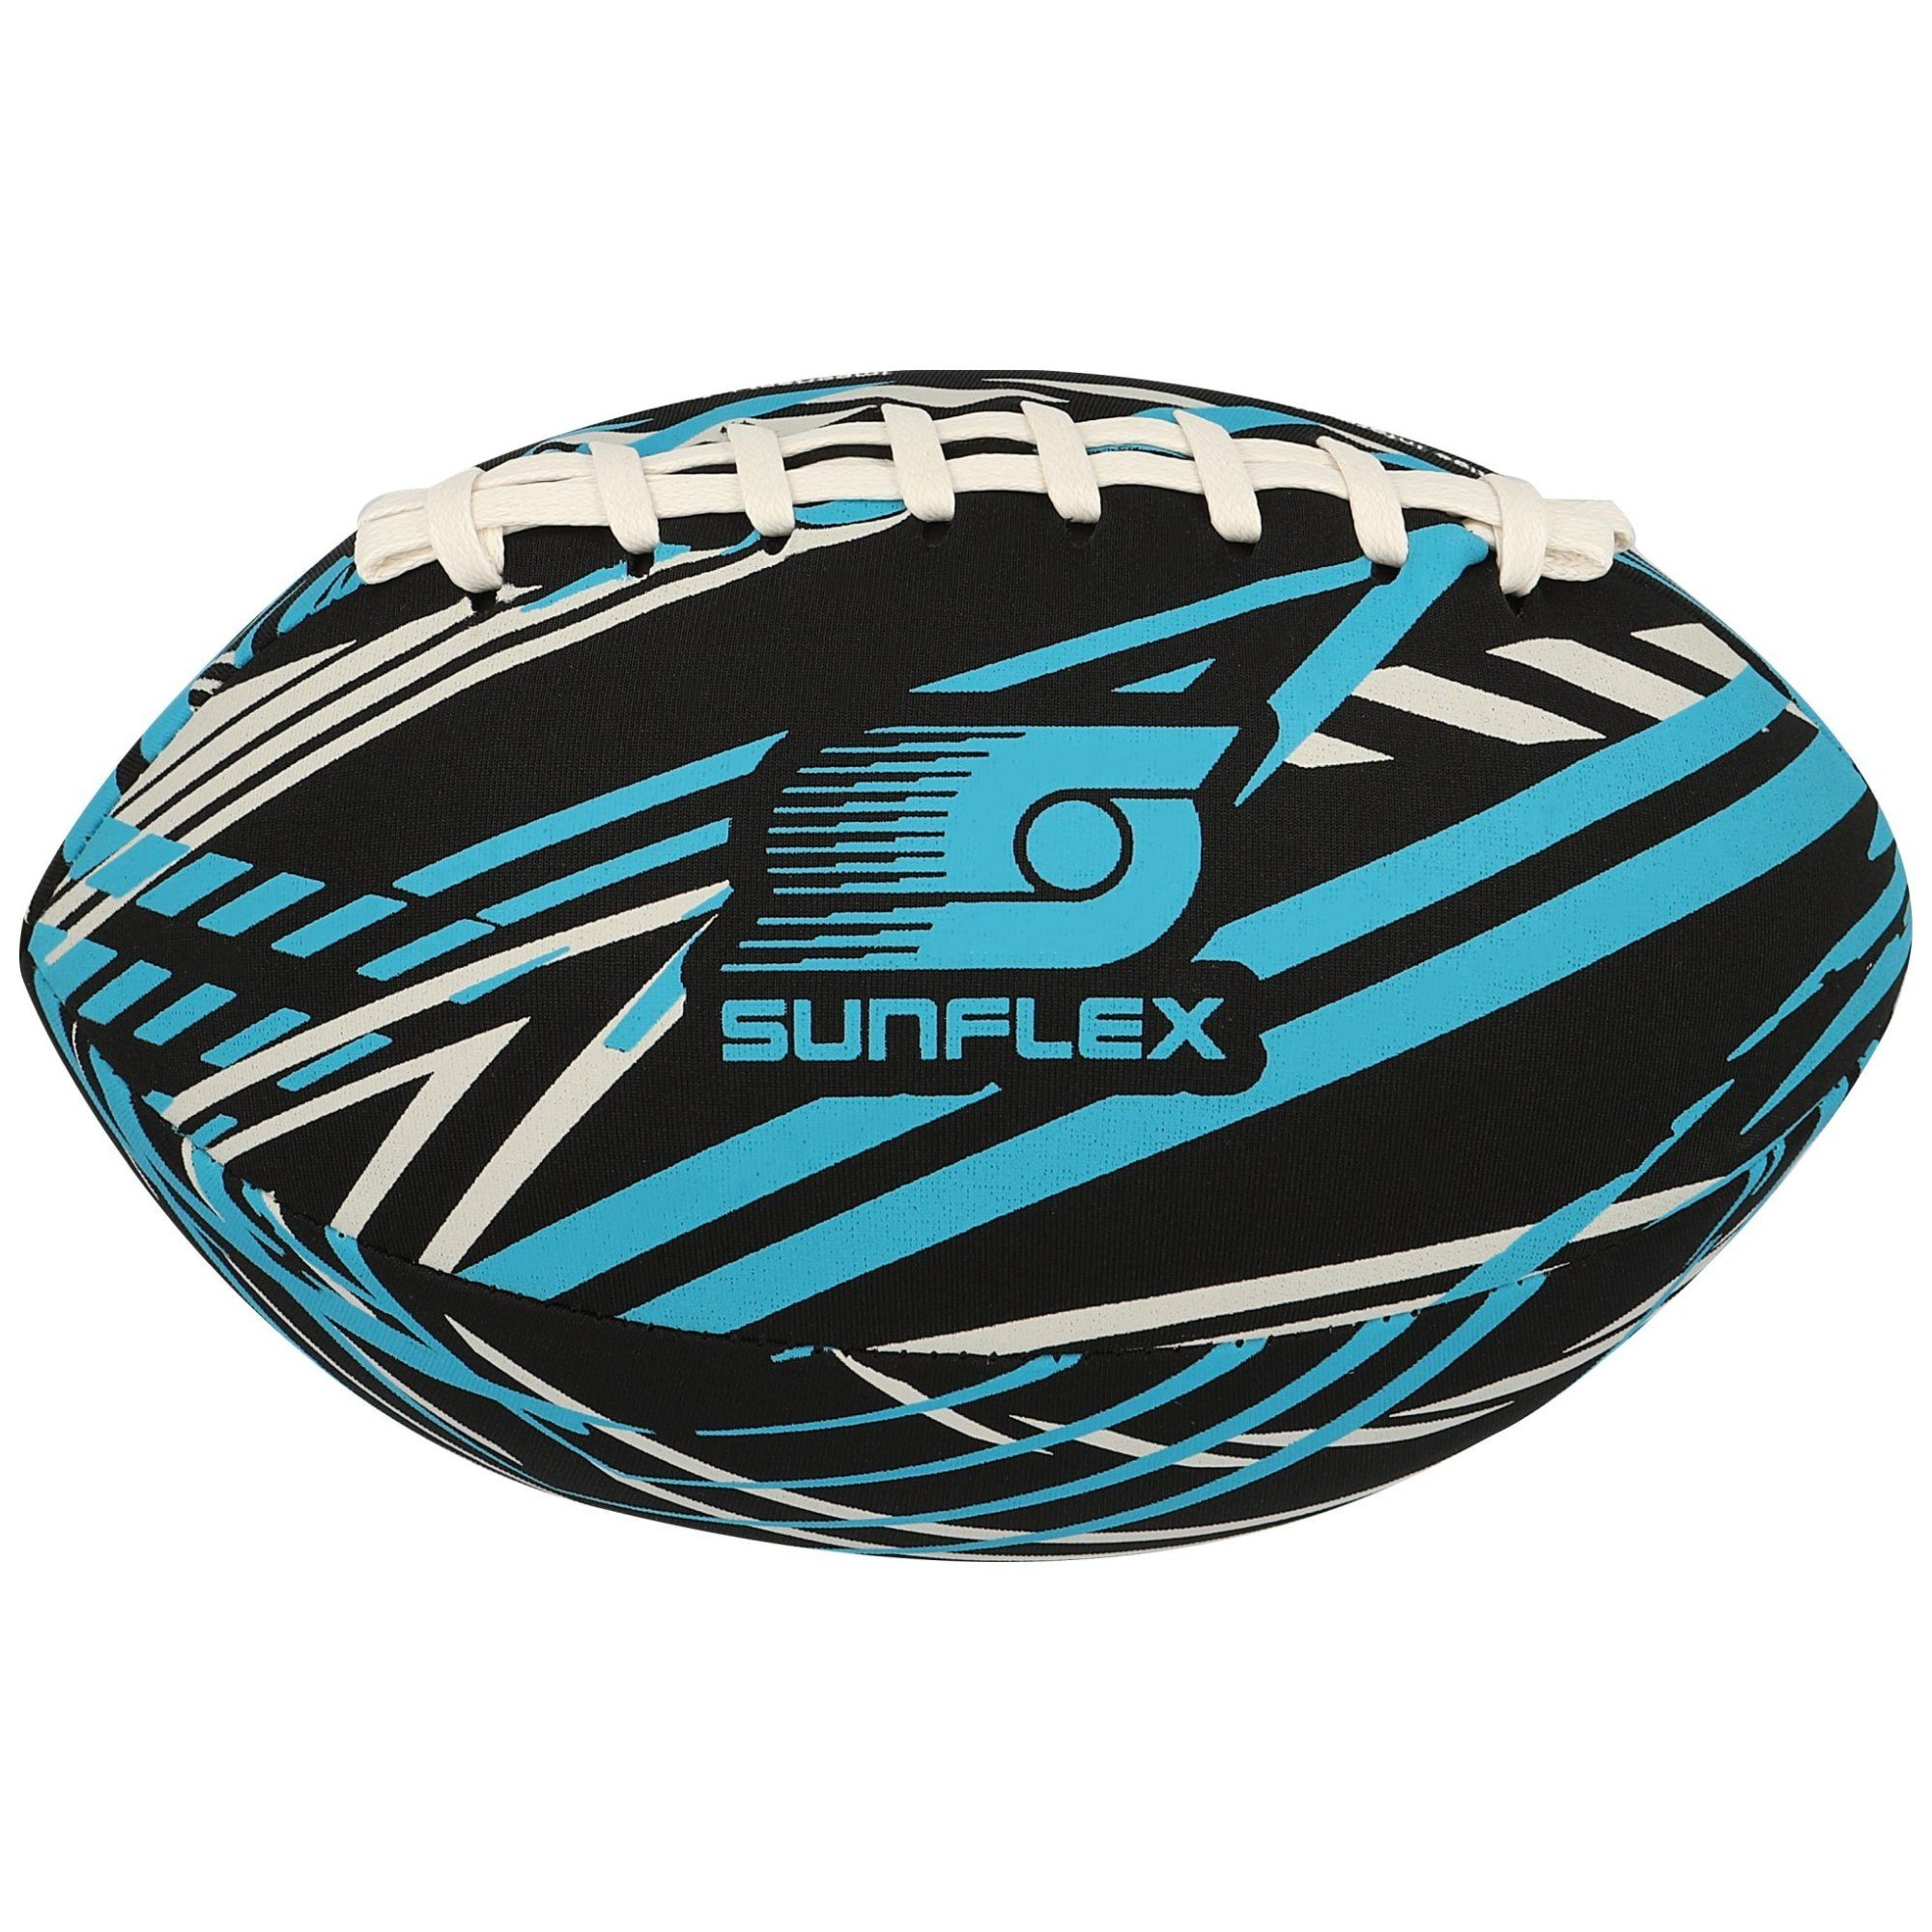 Football sunflex Sunflex Football Action Pro American